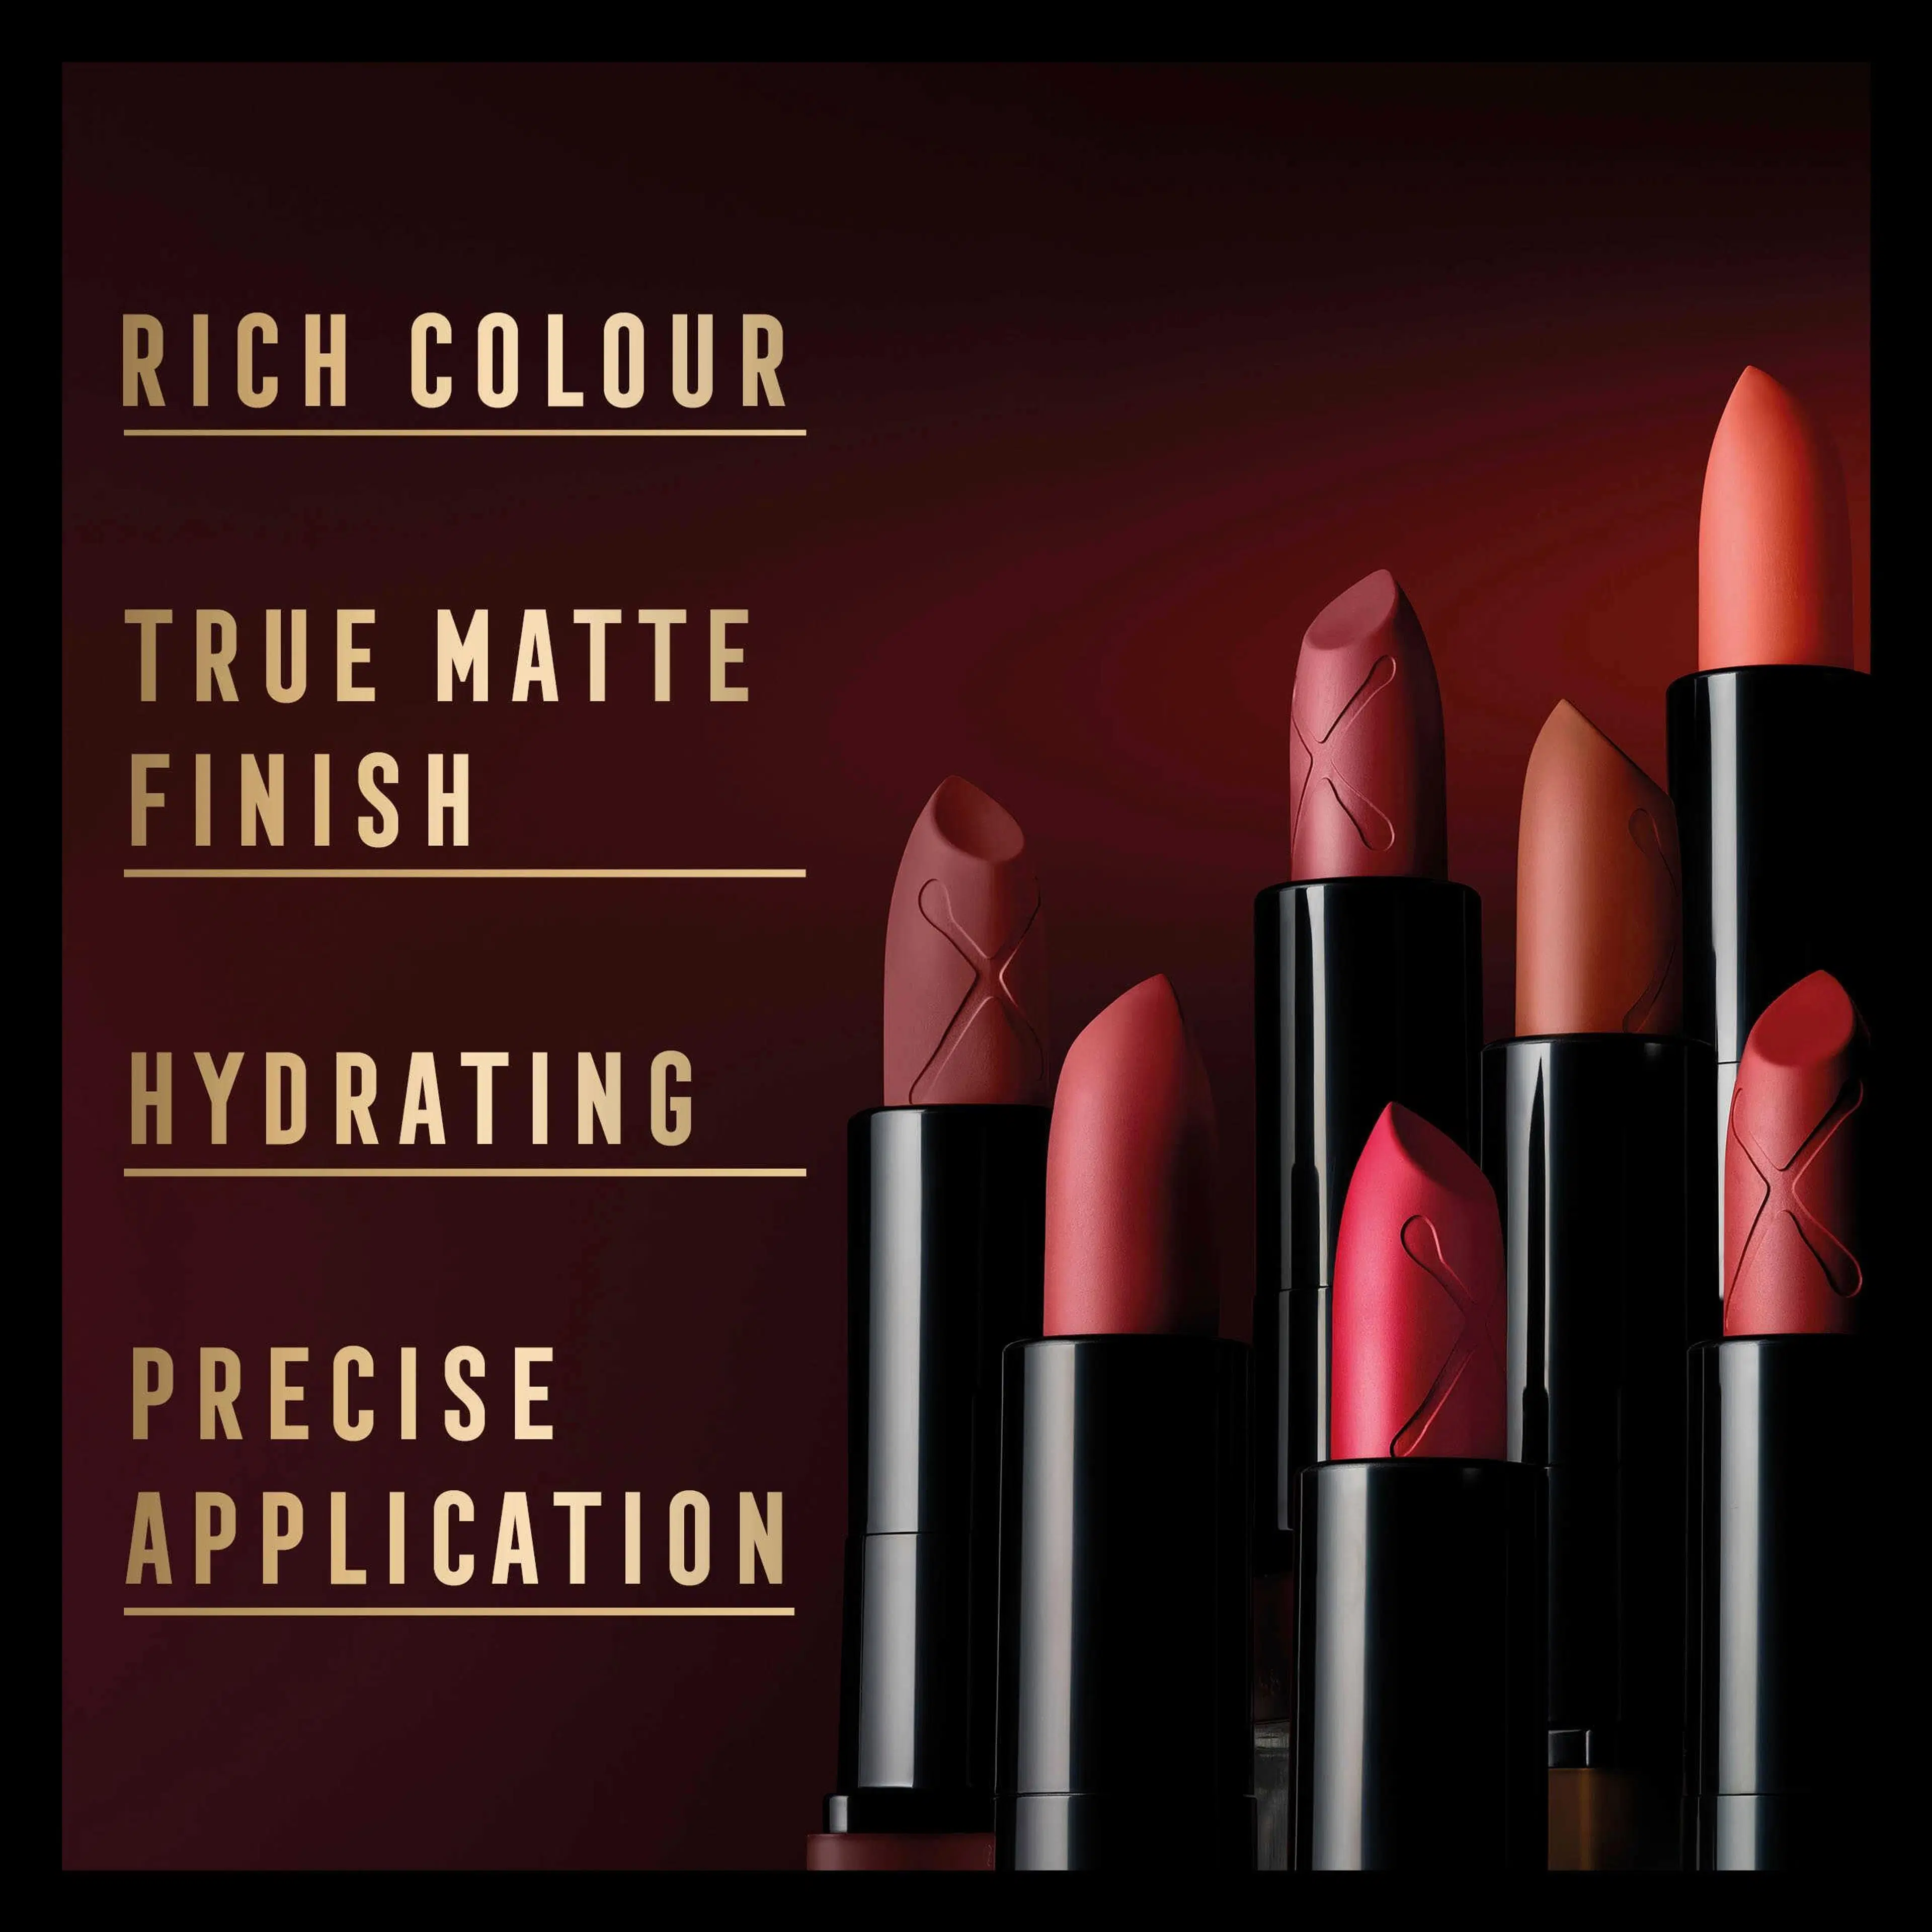 Max Factor Colour Elixir Velvet Matte Lipstick 20 Rose